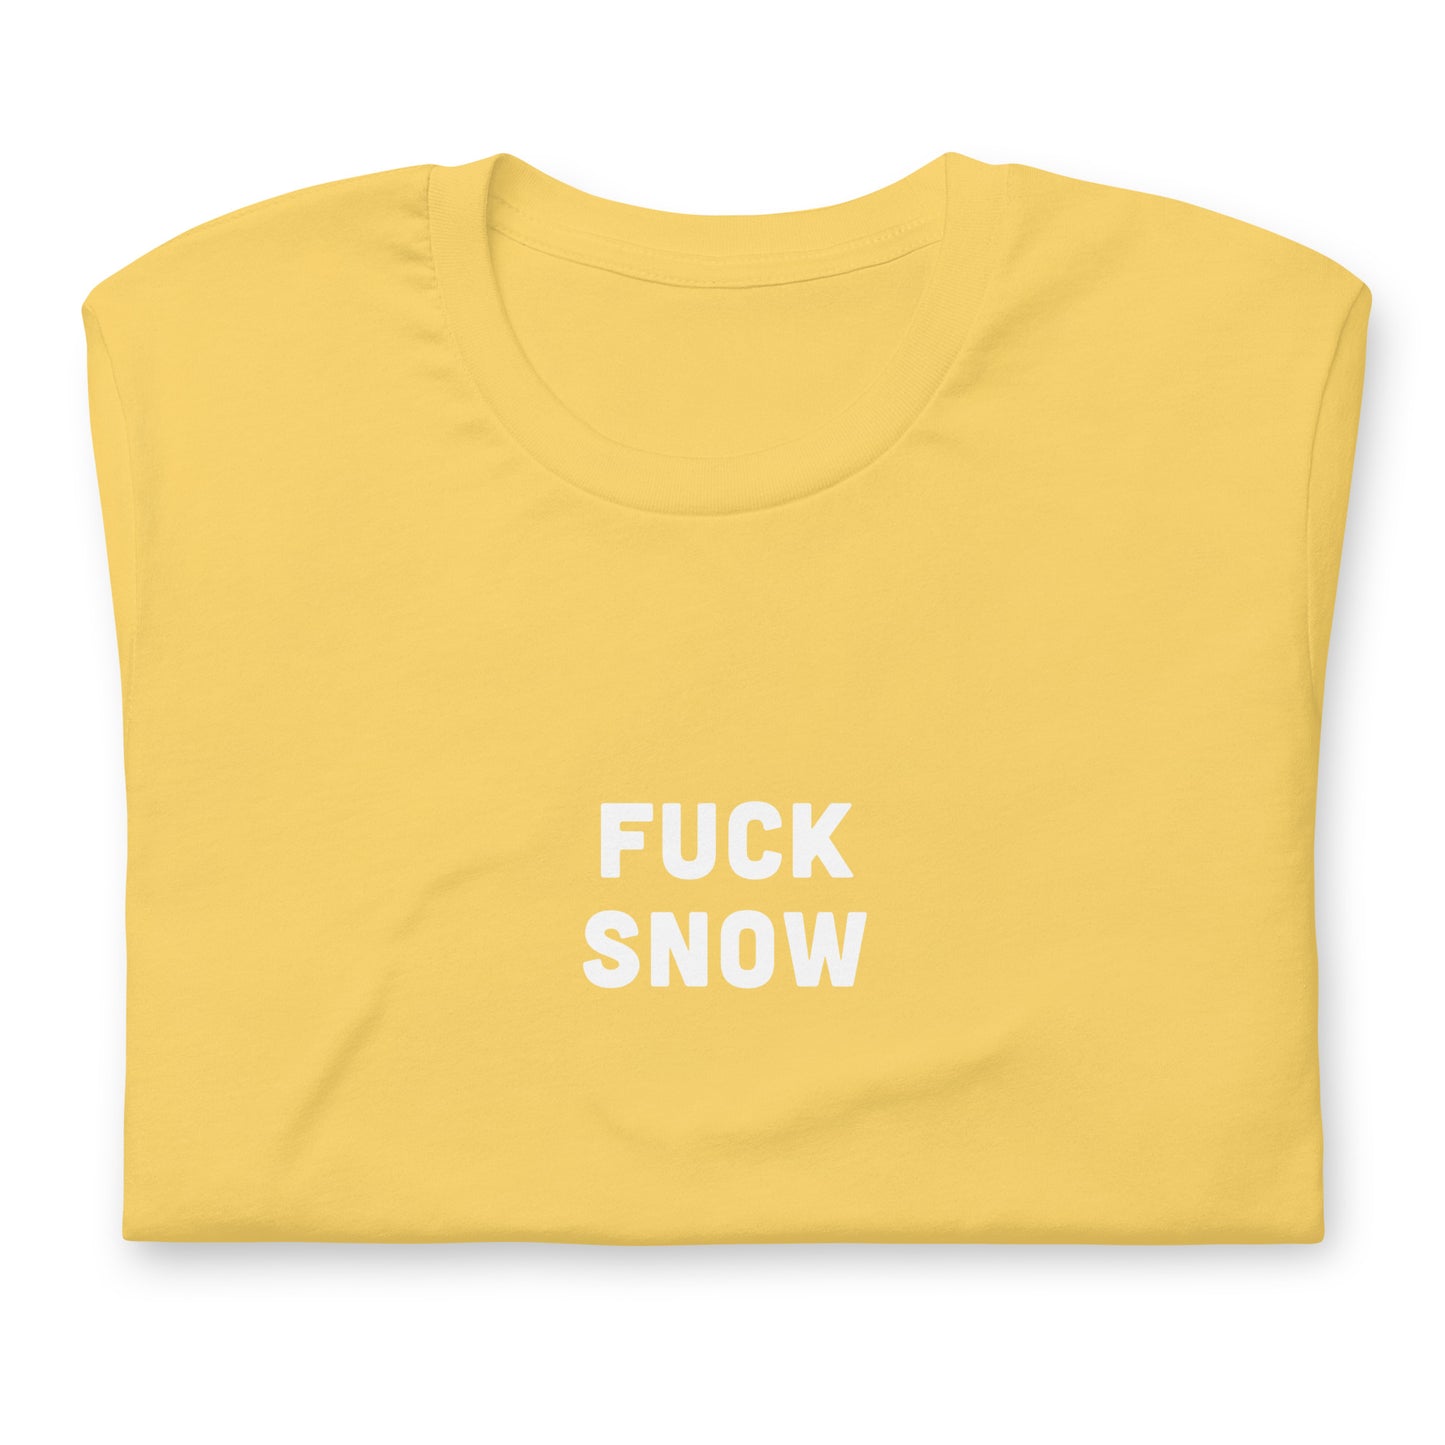 Fuck Snow T-Shirt Size 2XL Color Asphalt